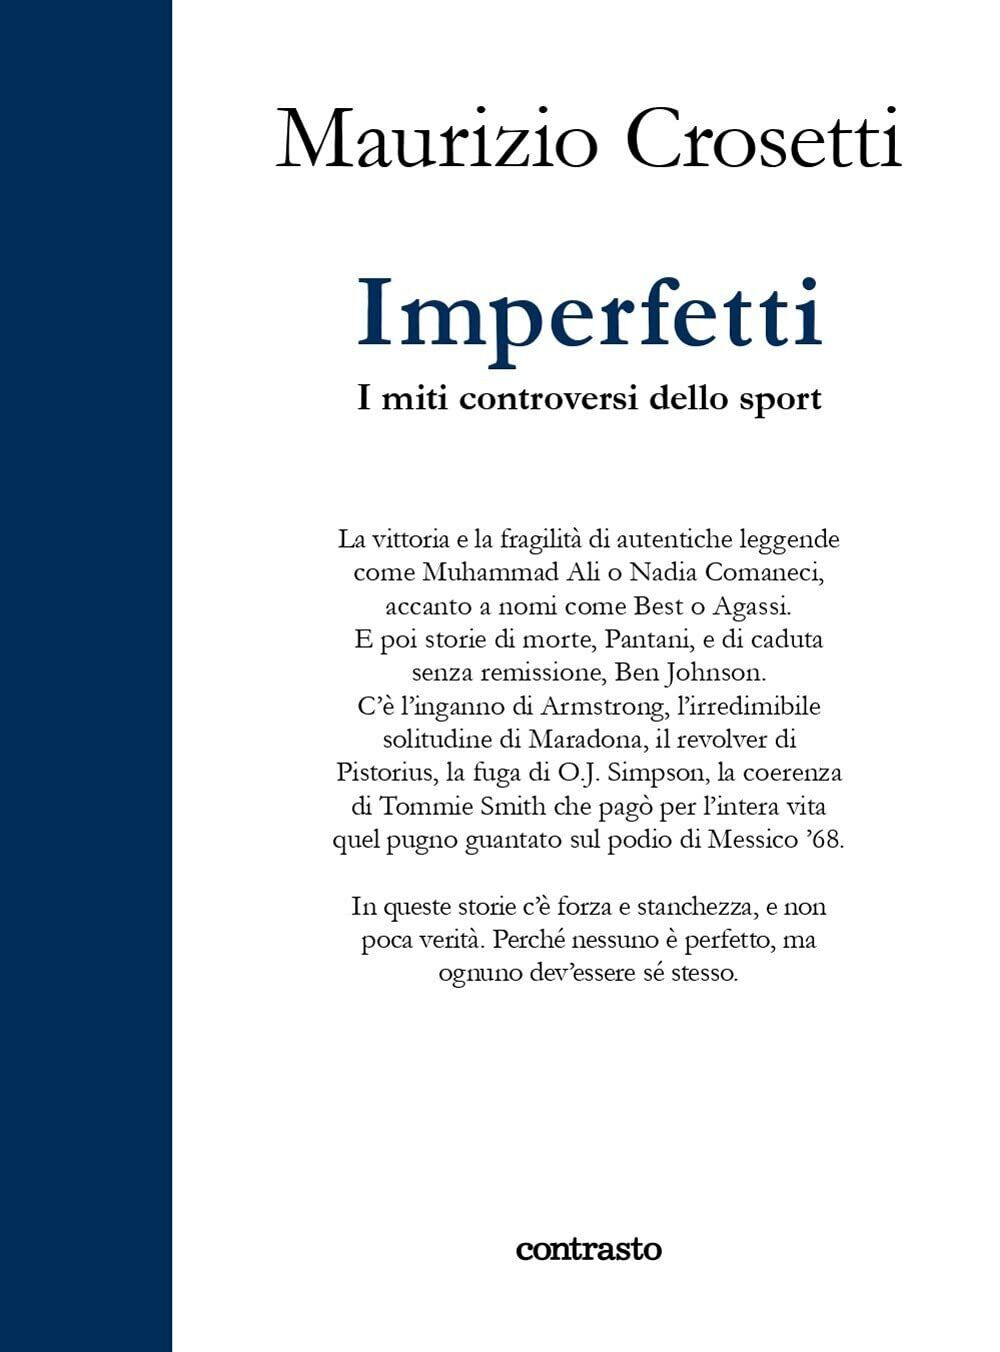 Imperfetti. I miti controversi dello sport - Maurizio Crosetti - Contrasto, 2021